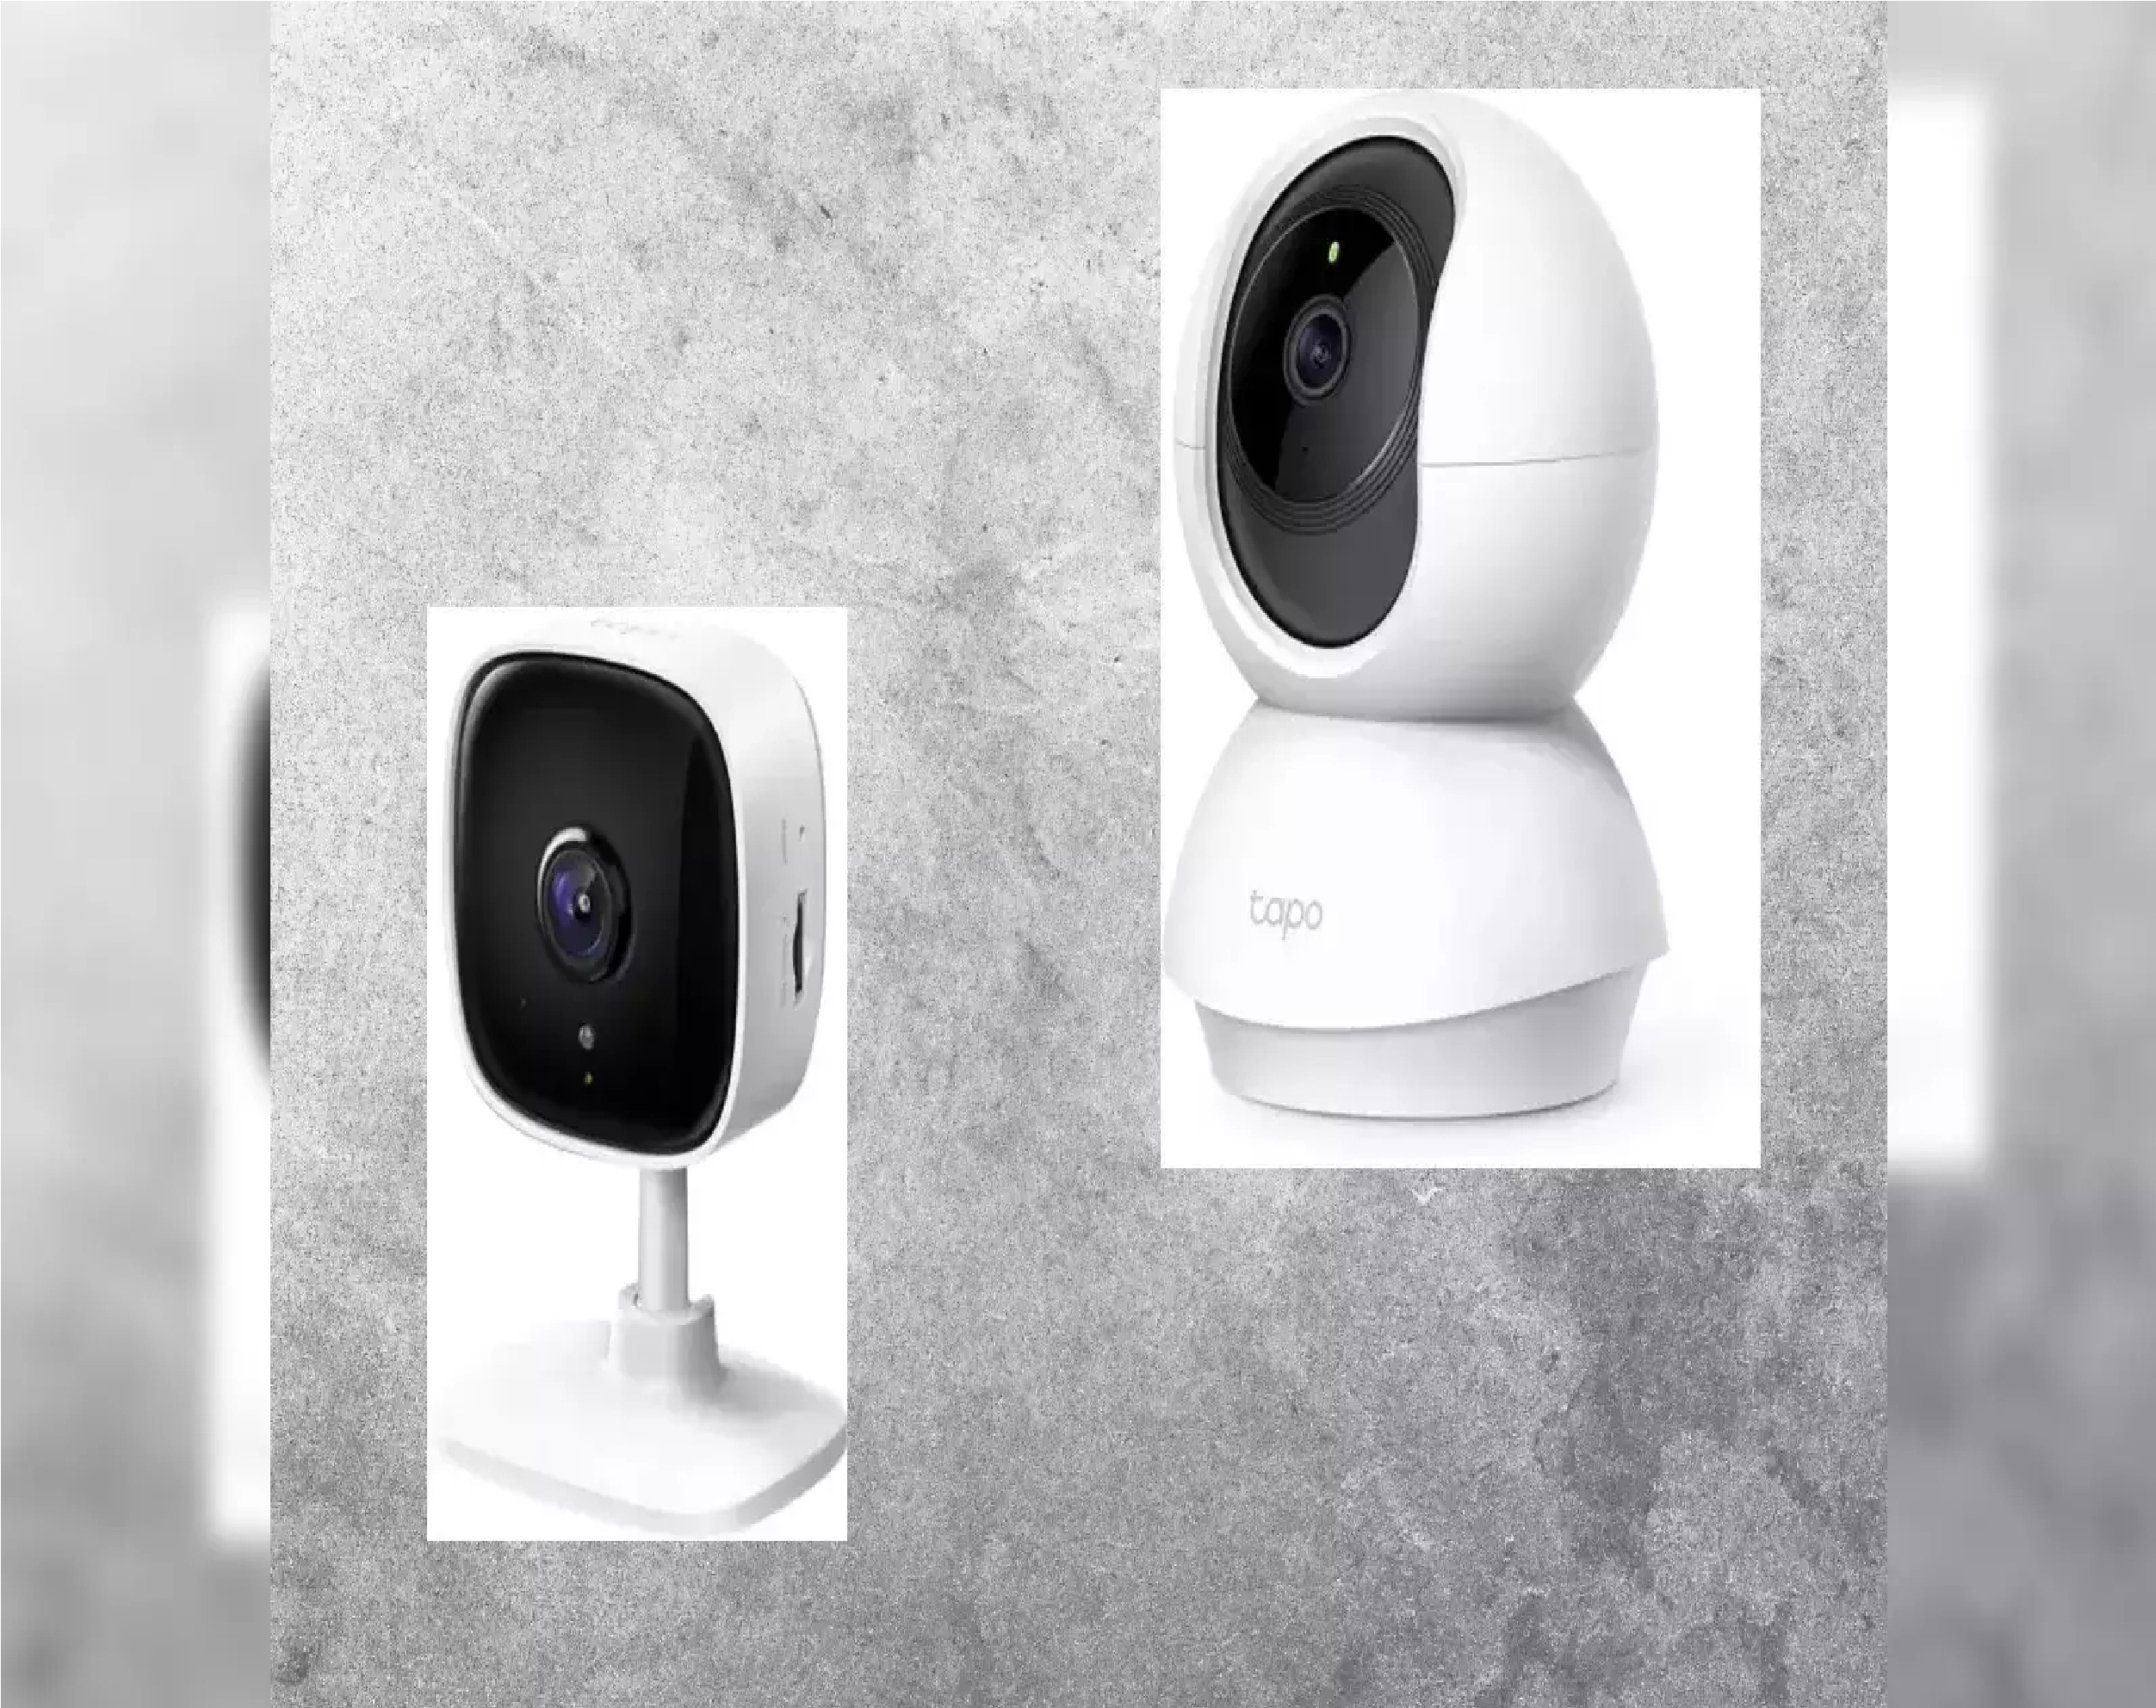 घर पर लगवाना है CCTV कैमरा तो पहले जरूर चेक कर लें ये 4 चीज़ें